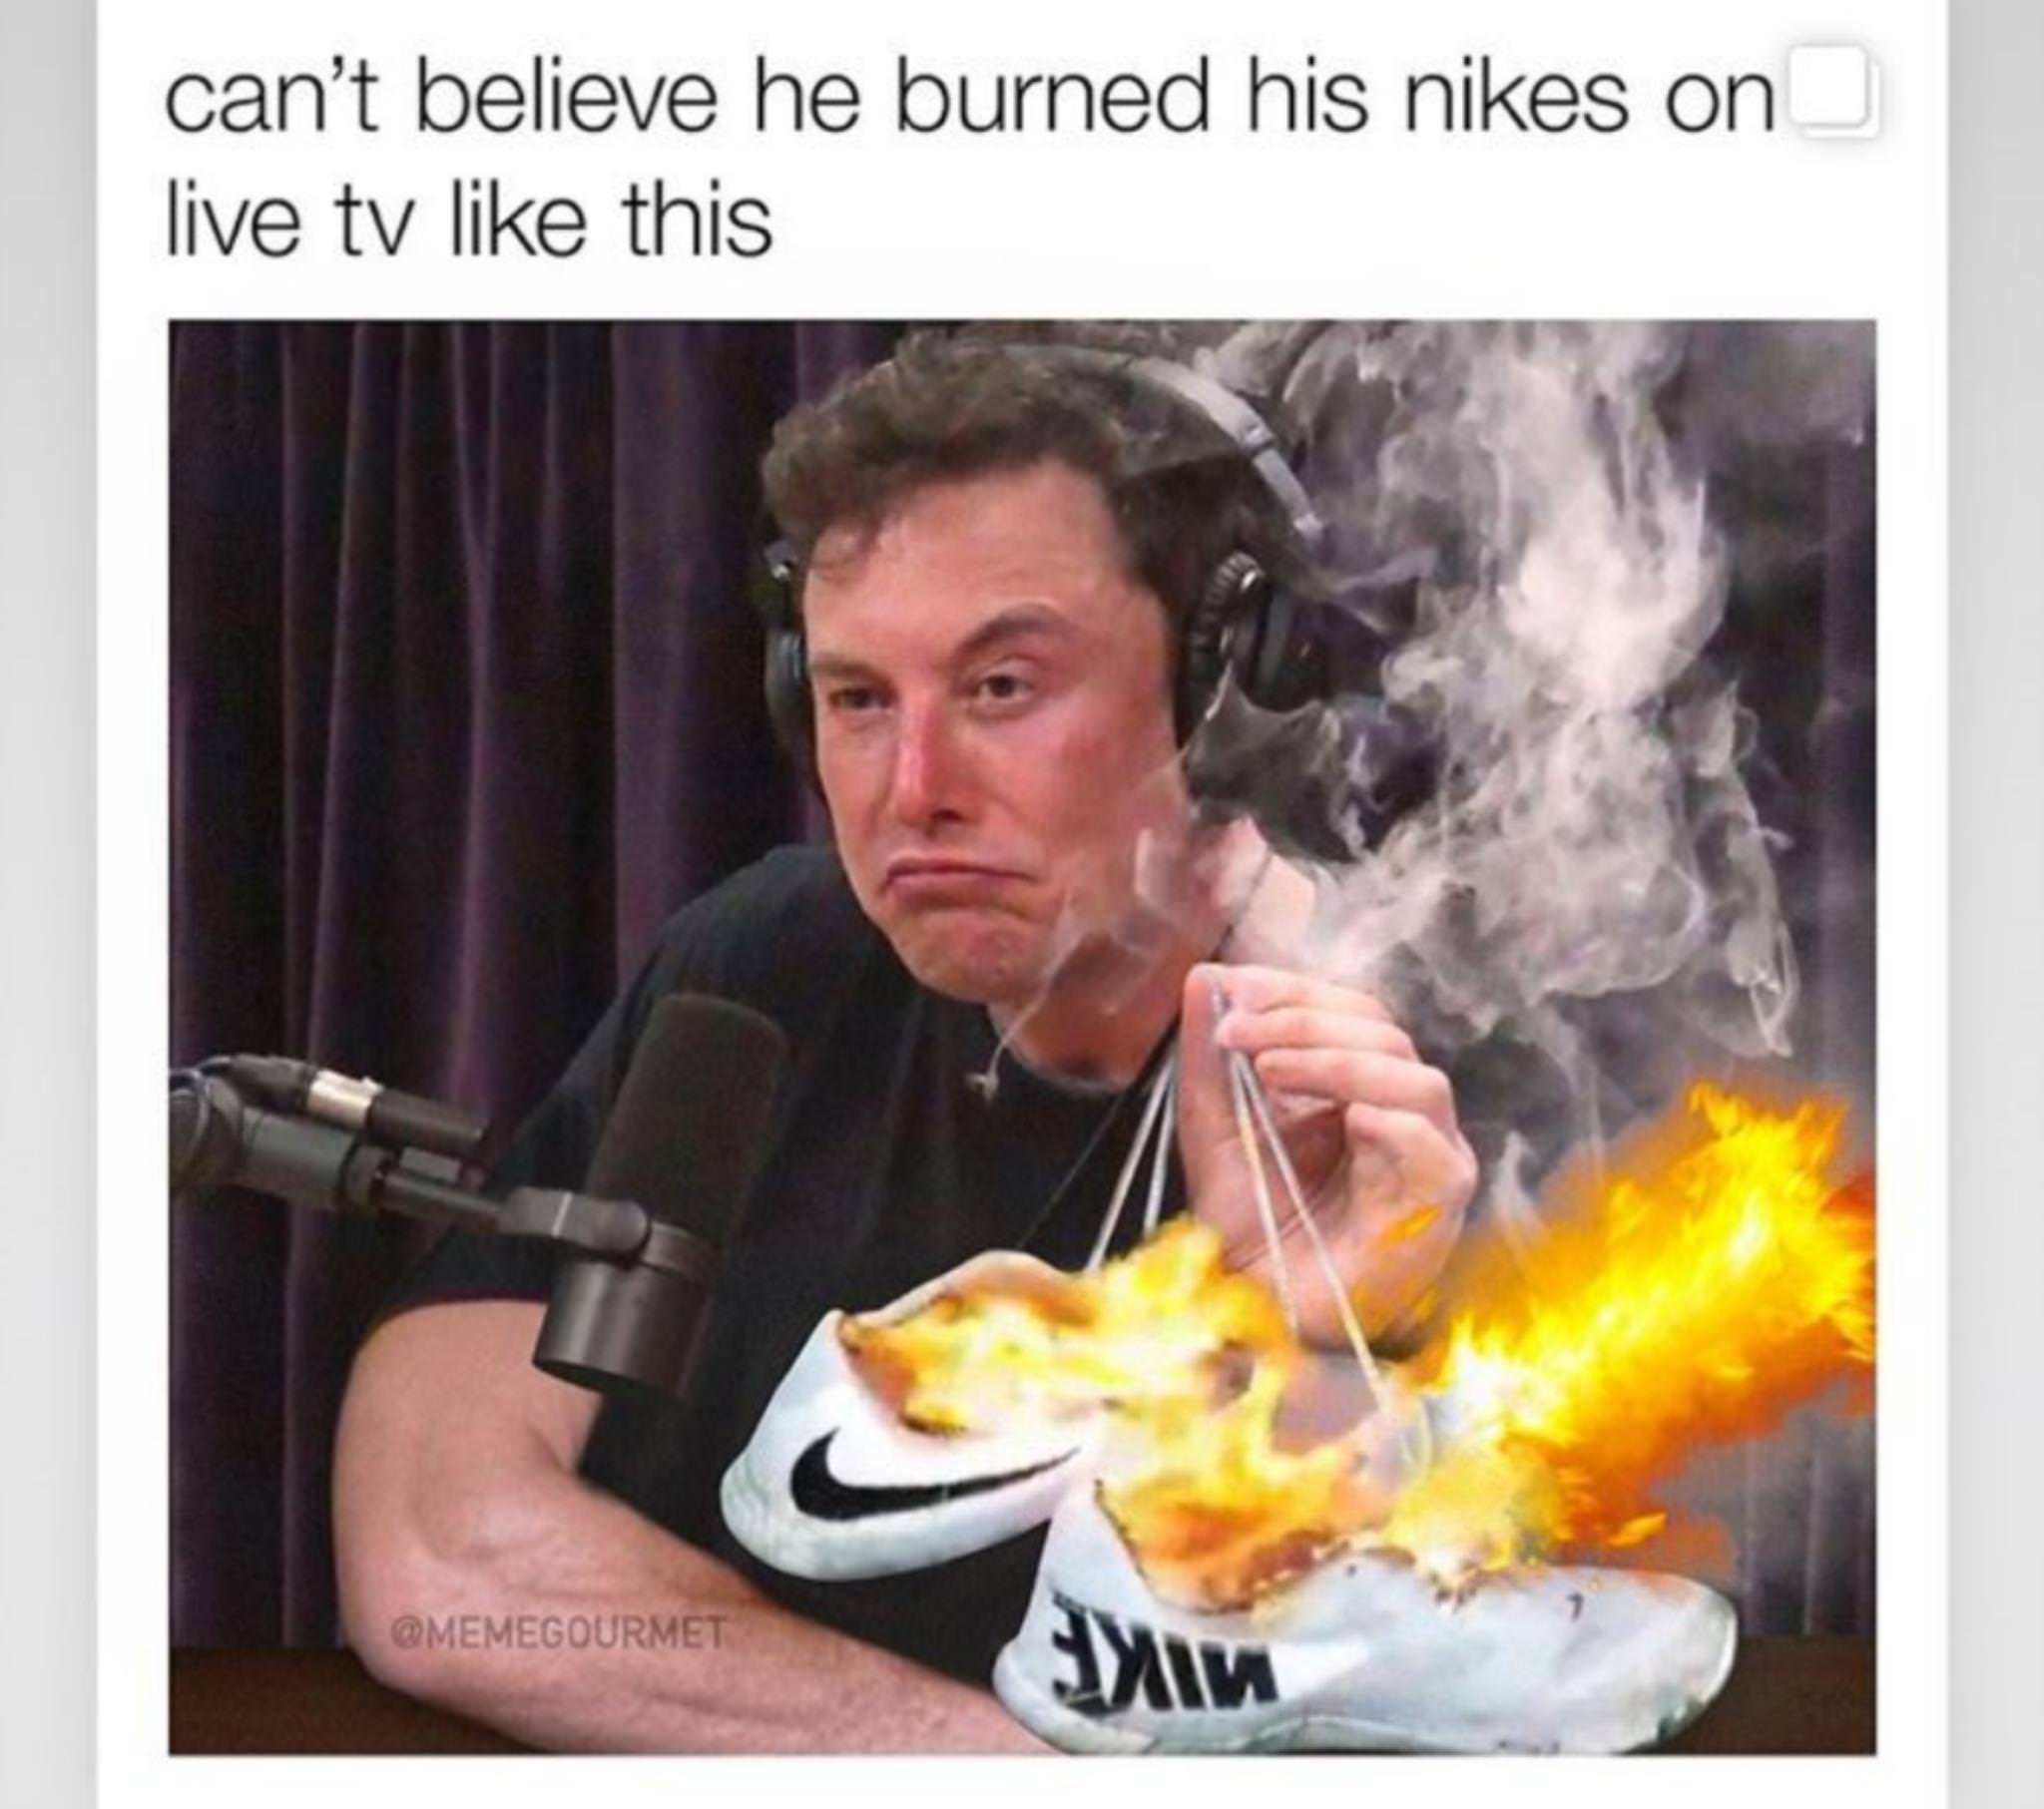 Elon Musk burned his Nikes on live TV - meme